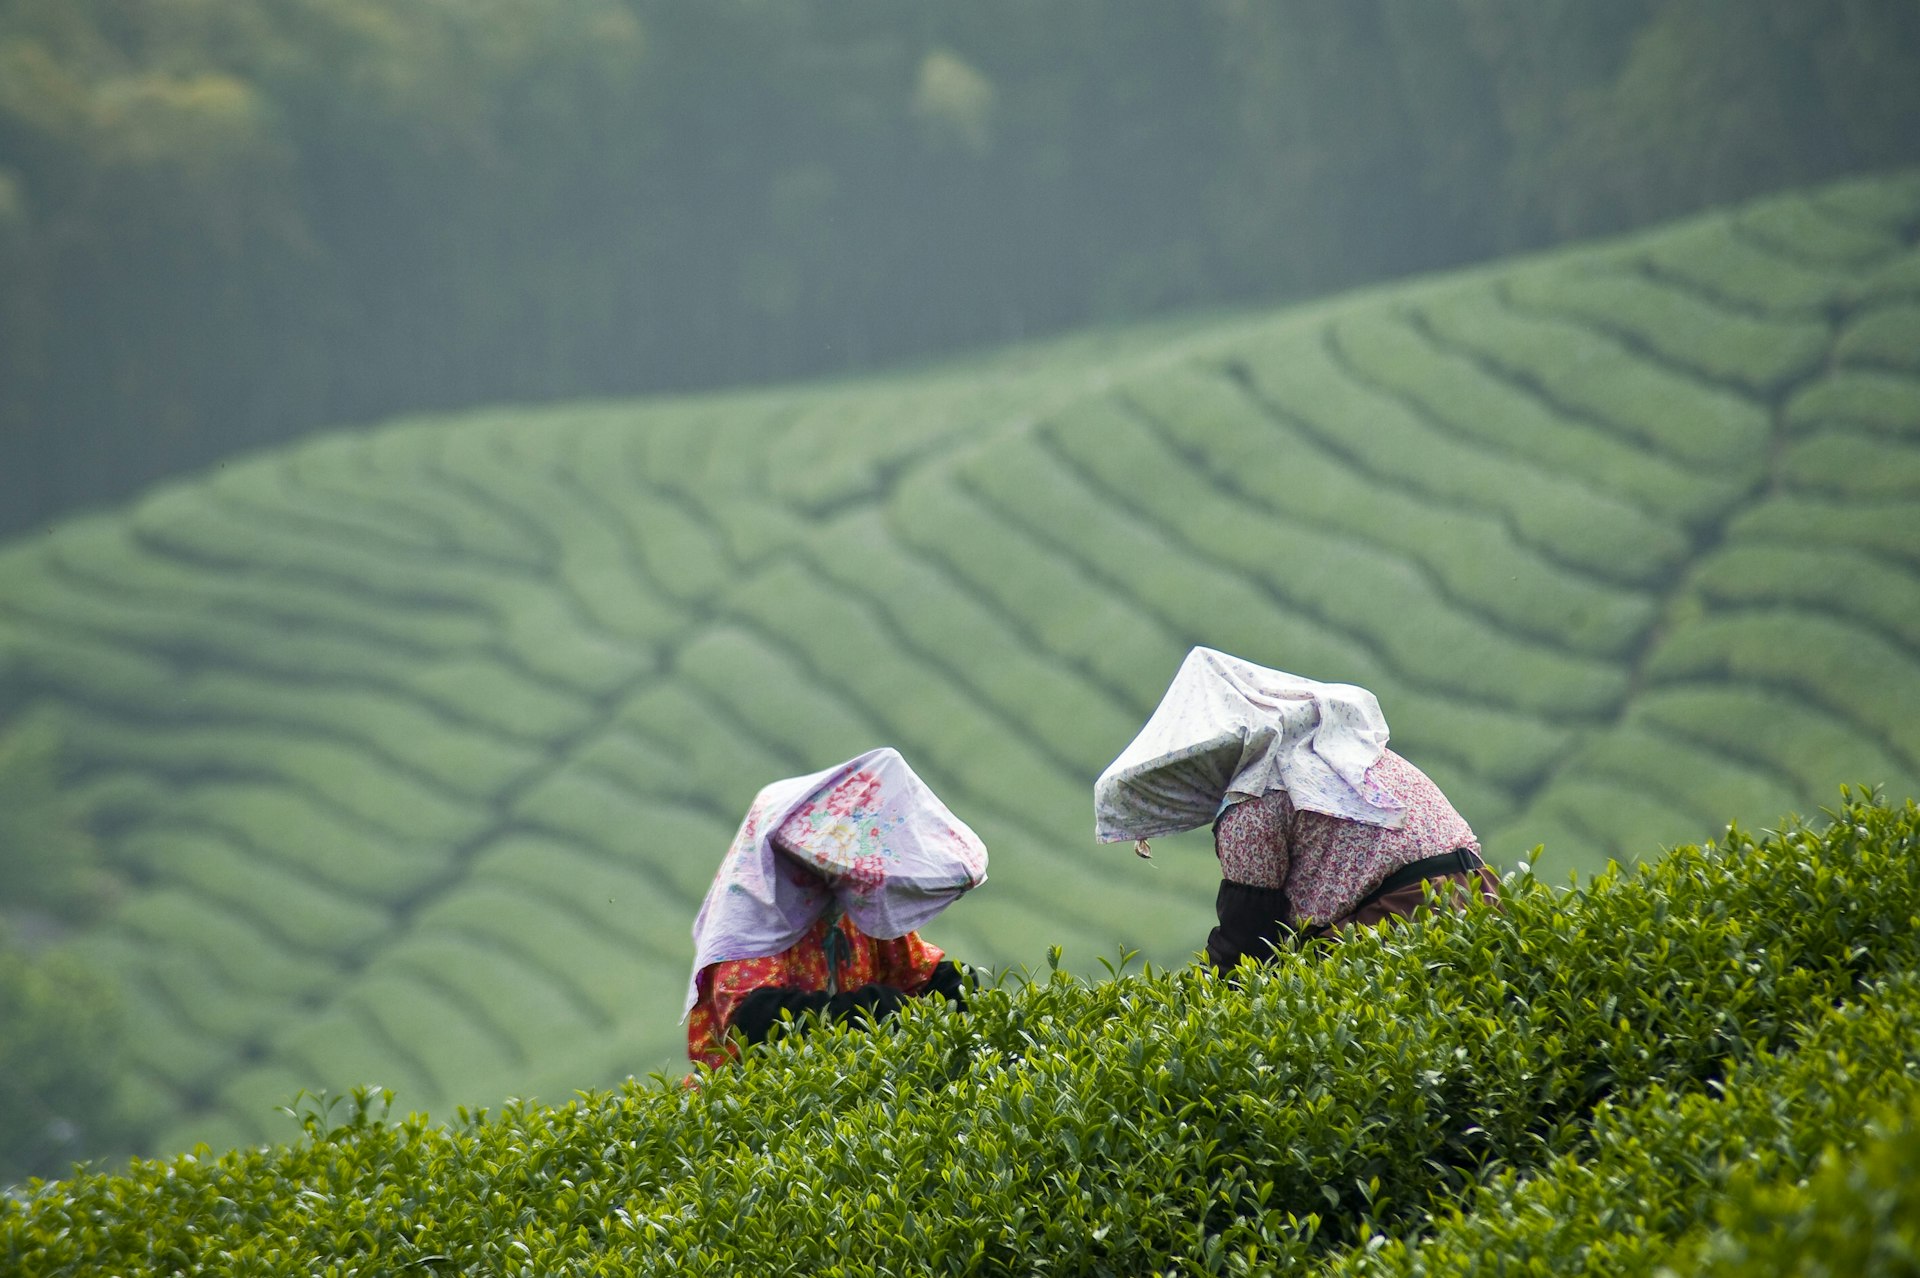 Tea pickers harvesting leaves in Taiwan